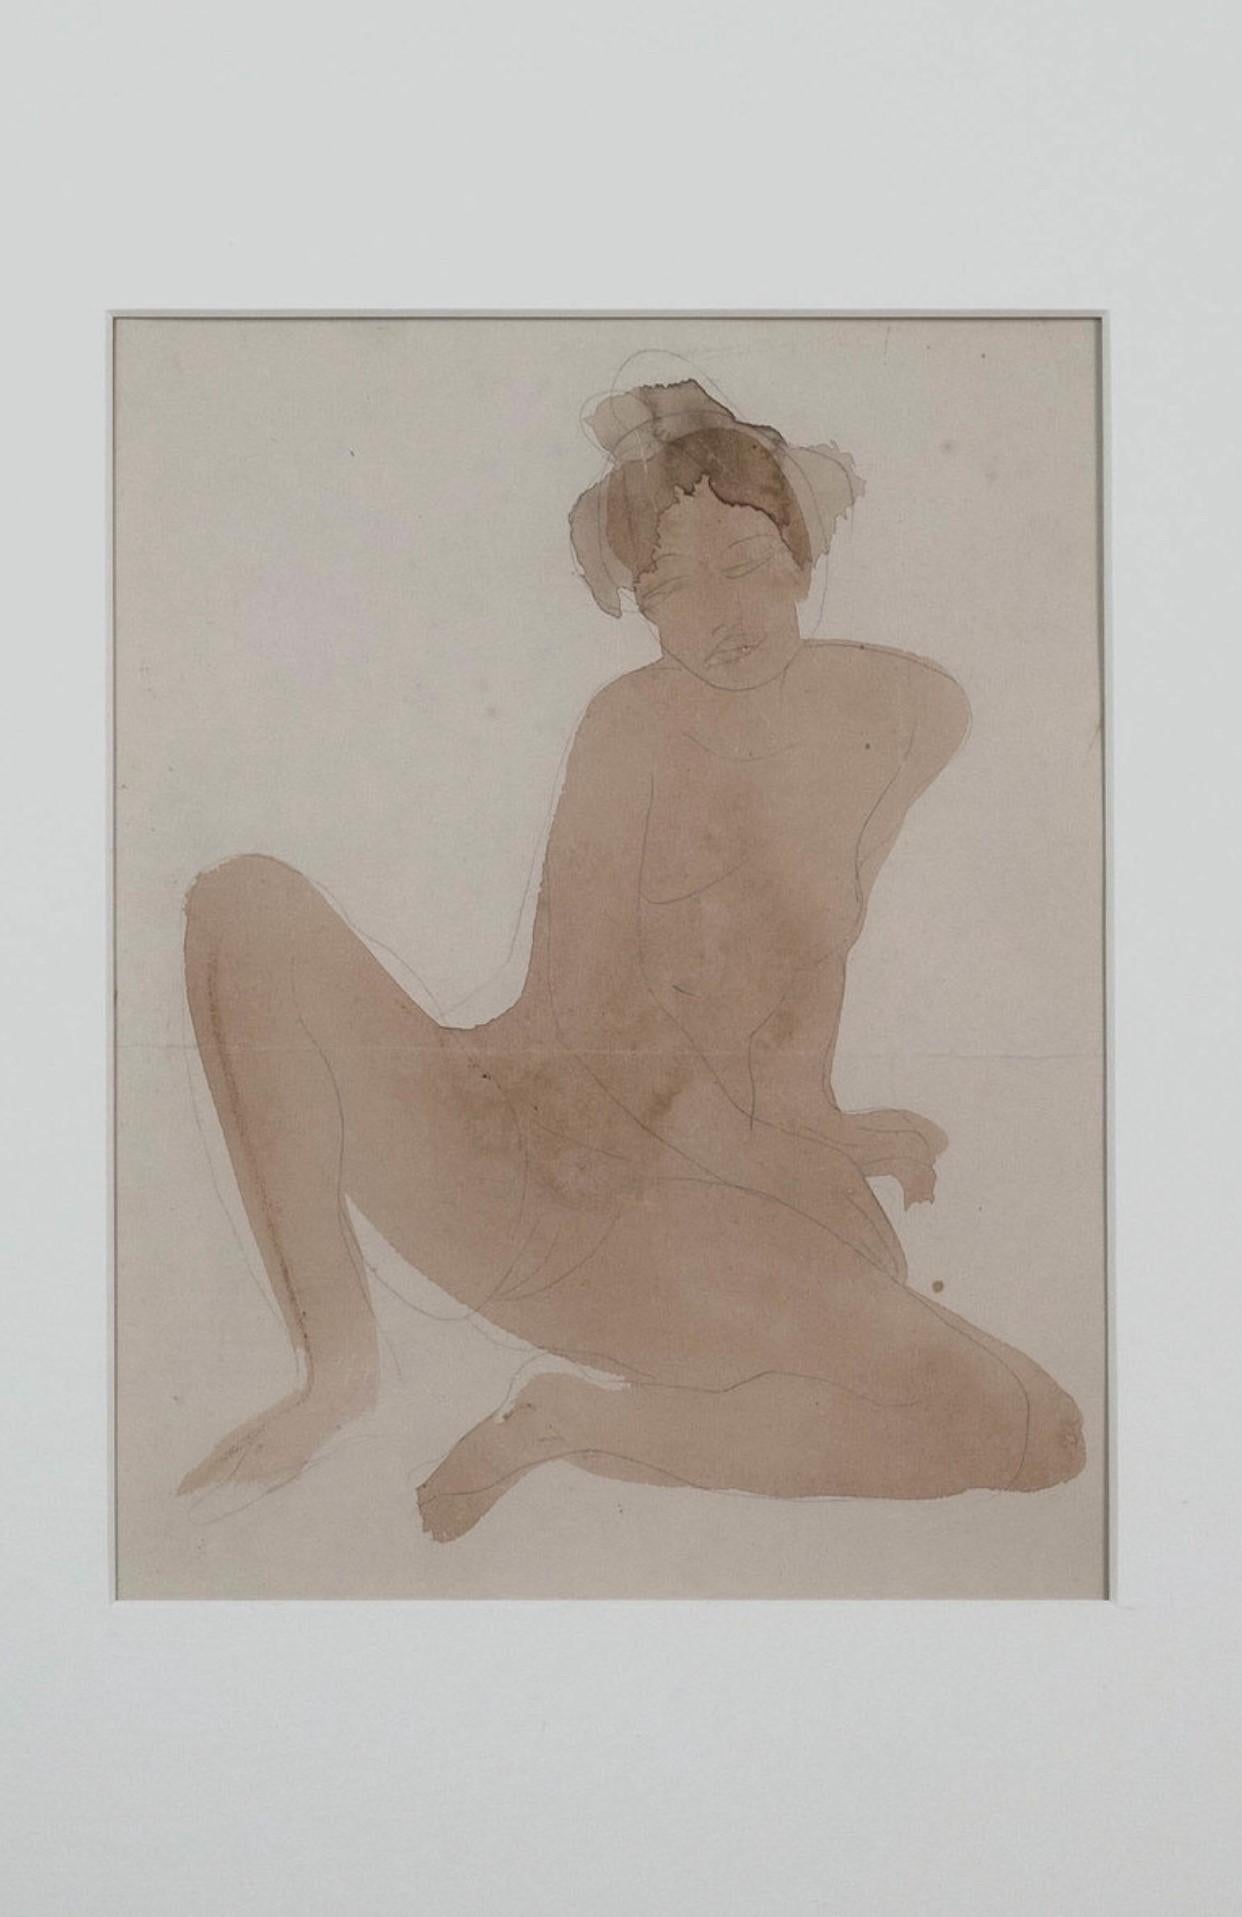 Seltenes Rodin-Aquarell und Bleistift auf Papier eines sitzenden Akts – Der kambodschanische Tänzerin – Art von Auguste Rodin